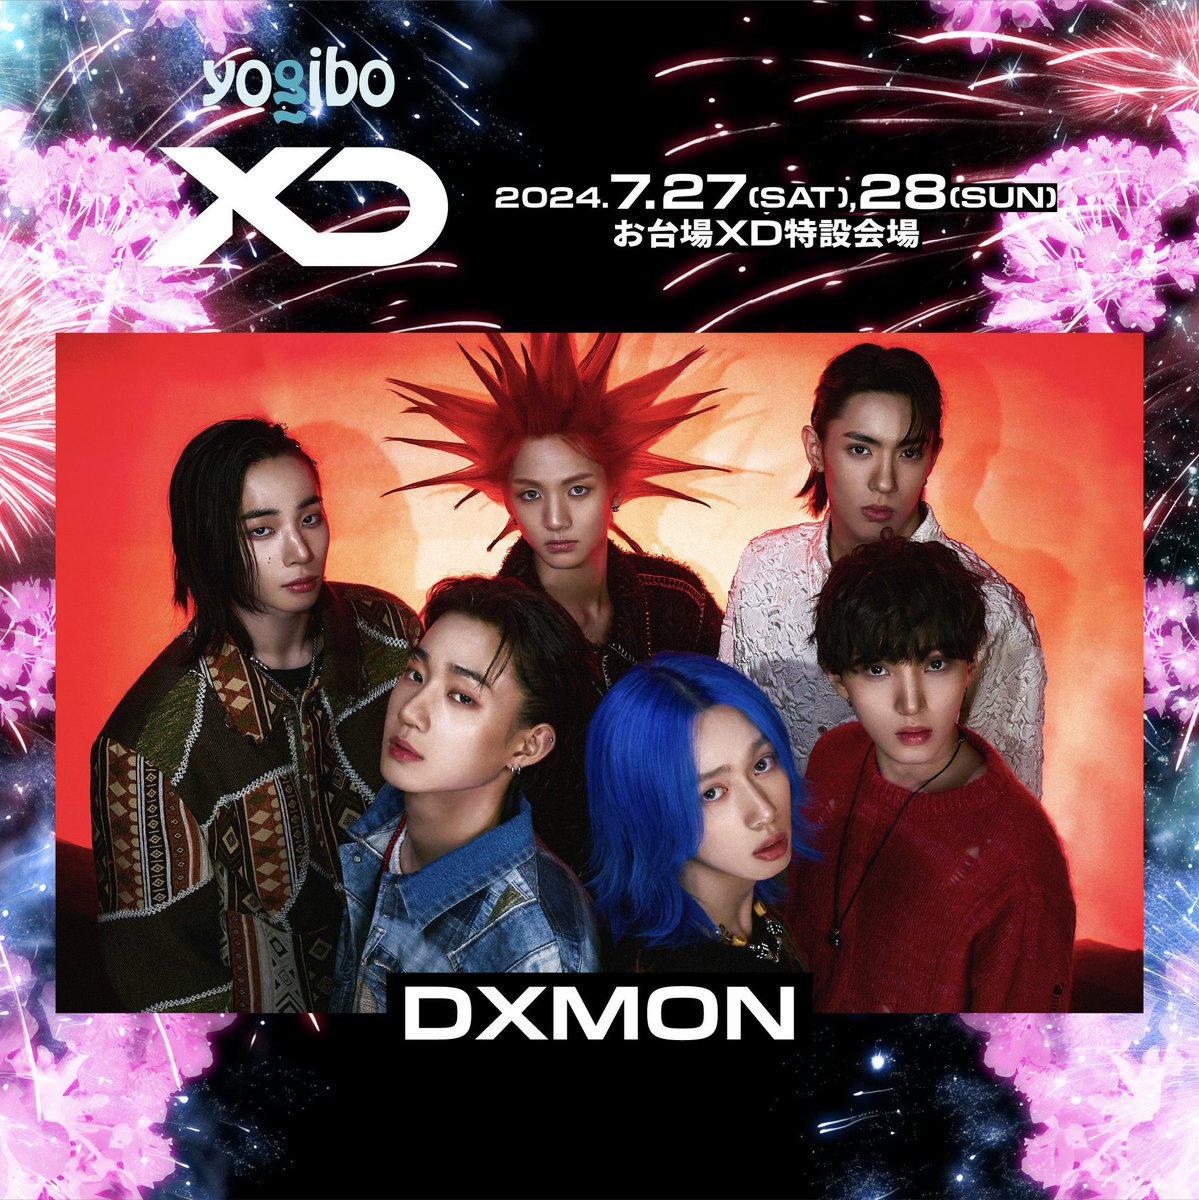 ／
XD World Music Festival presented by Yogibo
出演アーティスト紹介 
＼
7/28(sun)出演
【 DXMON 】
Identity - DXMON(ダイモン)はギリシャ語に由来する単語で、「自分たちの運命に果敢に挑戦して、成し遂げていく」という意思が込められている。

About -